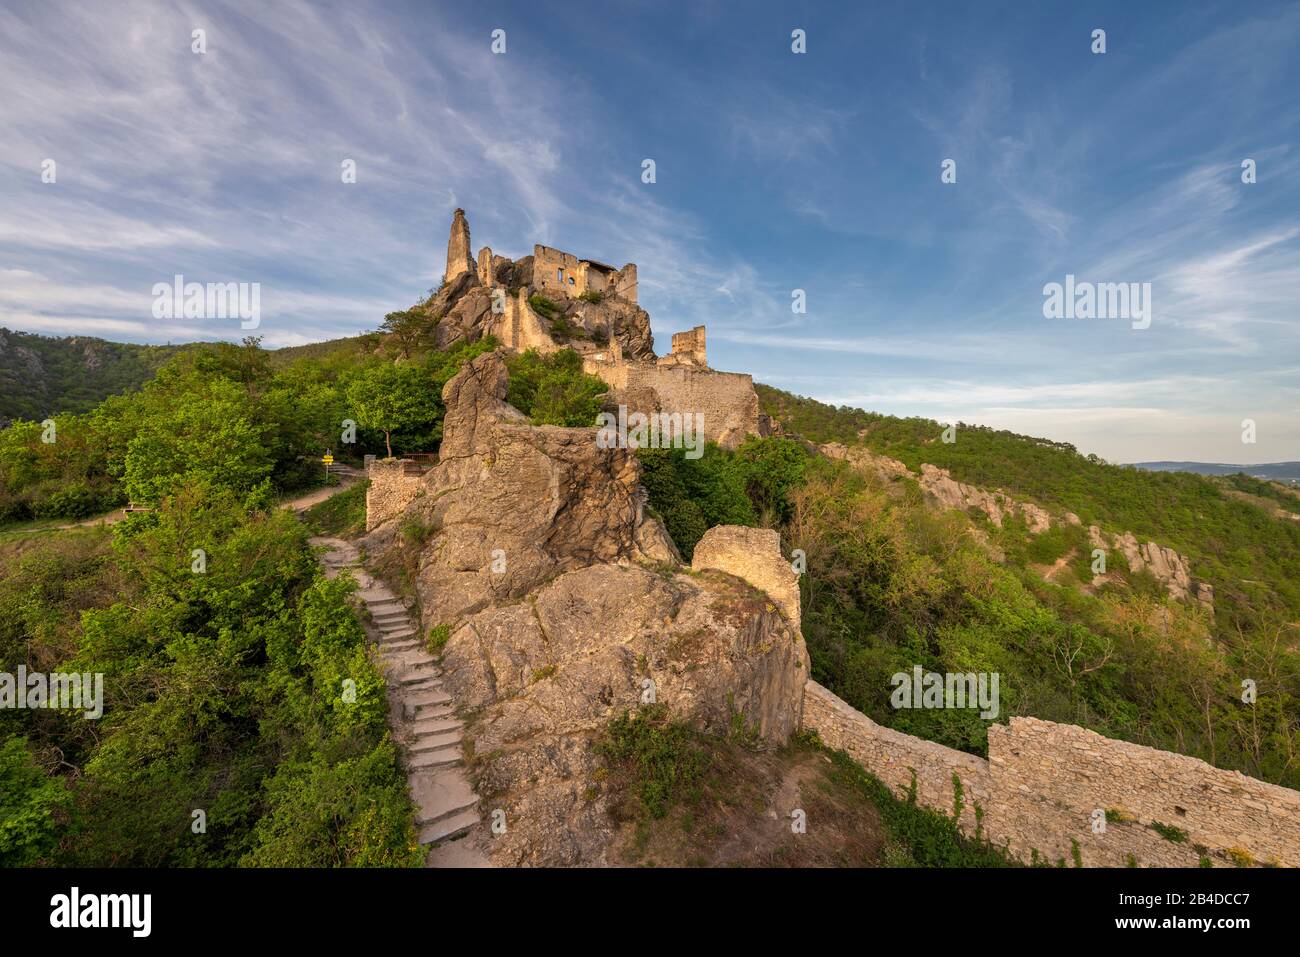 Dürnstein, Wachau, Waldviertel, Krems, Lower Austria, Austria, Europe. The castle ruins Dürnstein Stock Photo